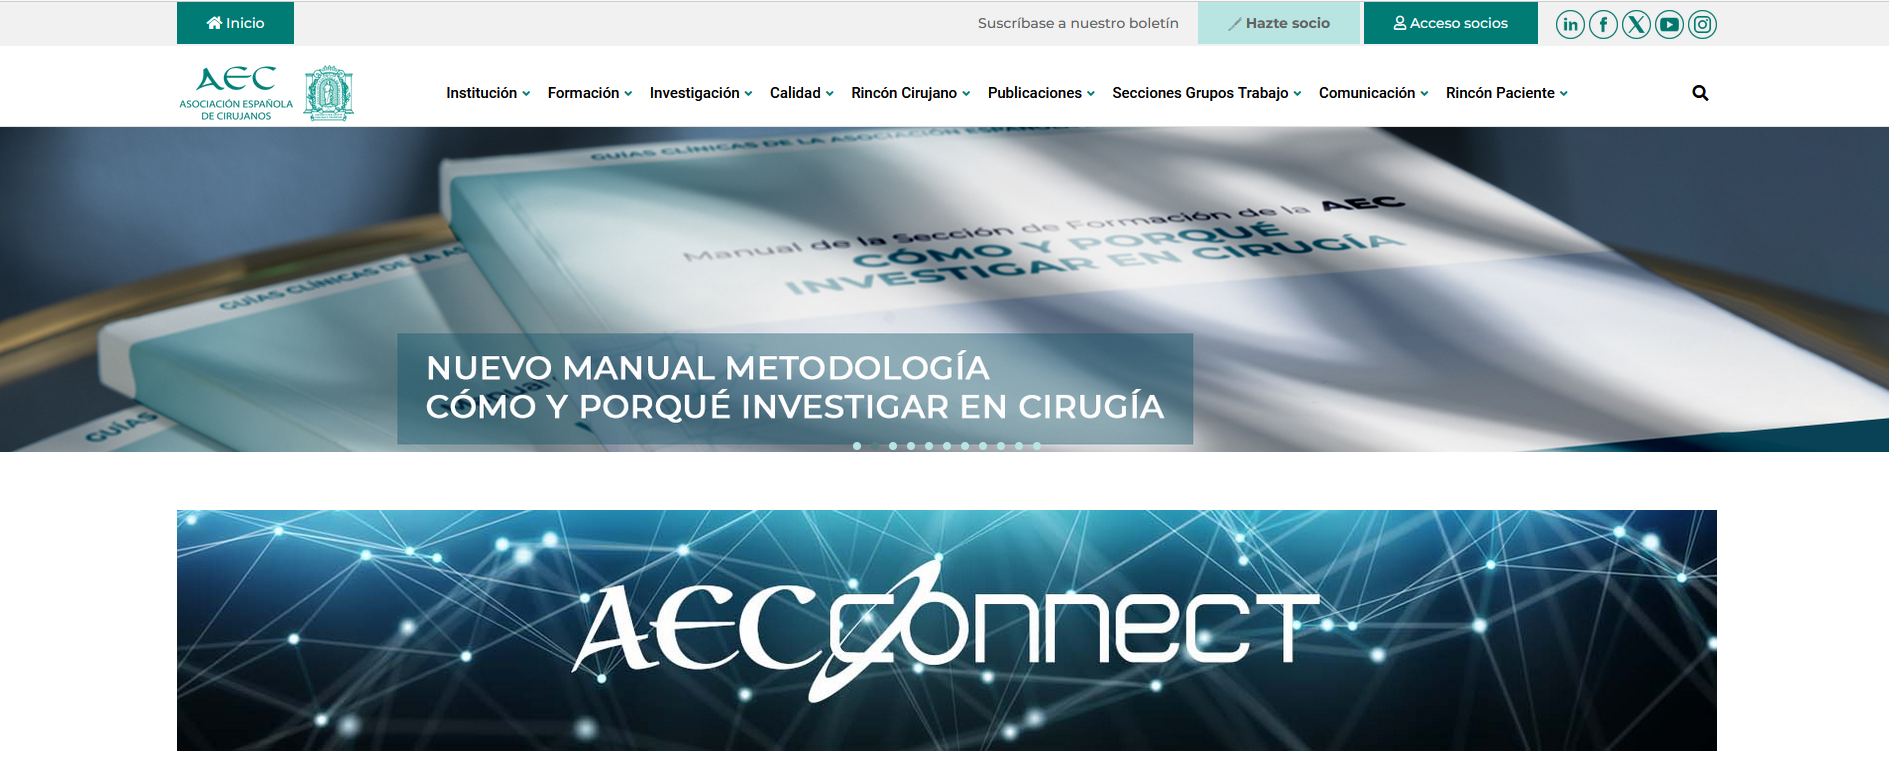 Captura de pantalla de la página web de la Asociación de Cirujanos de España.